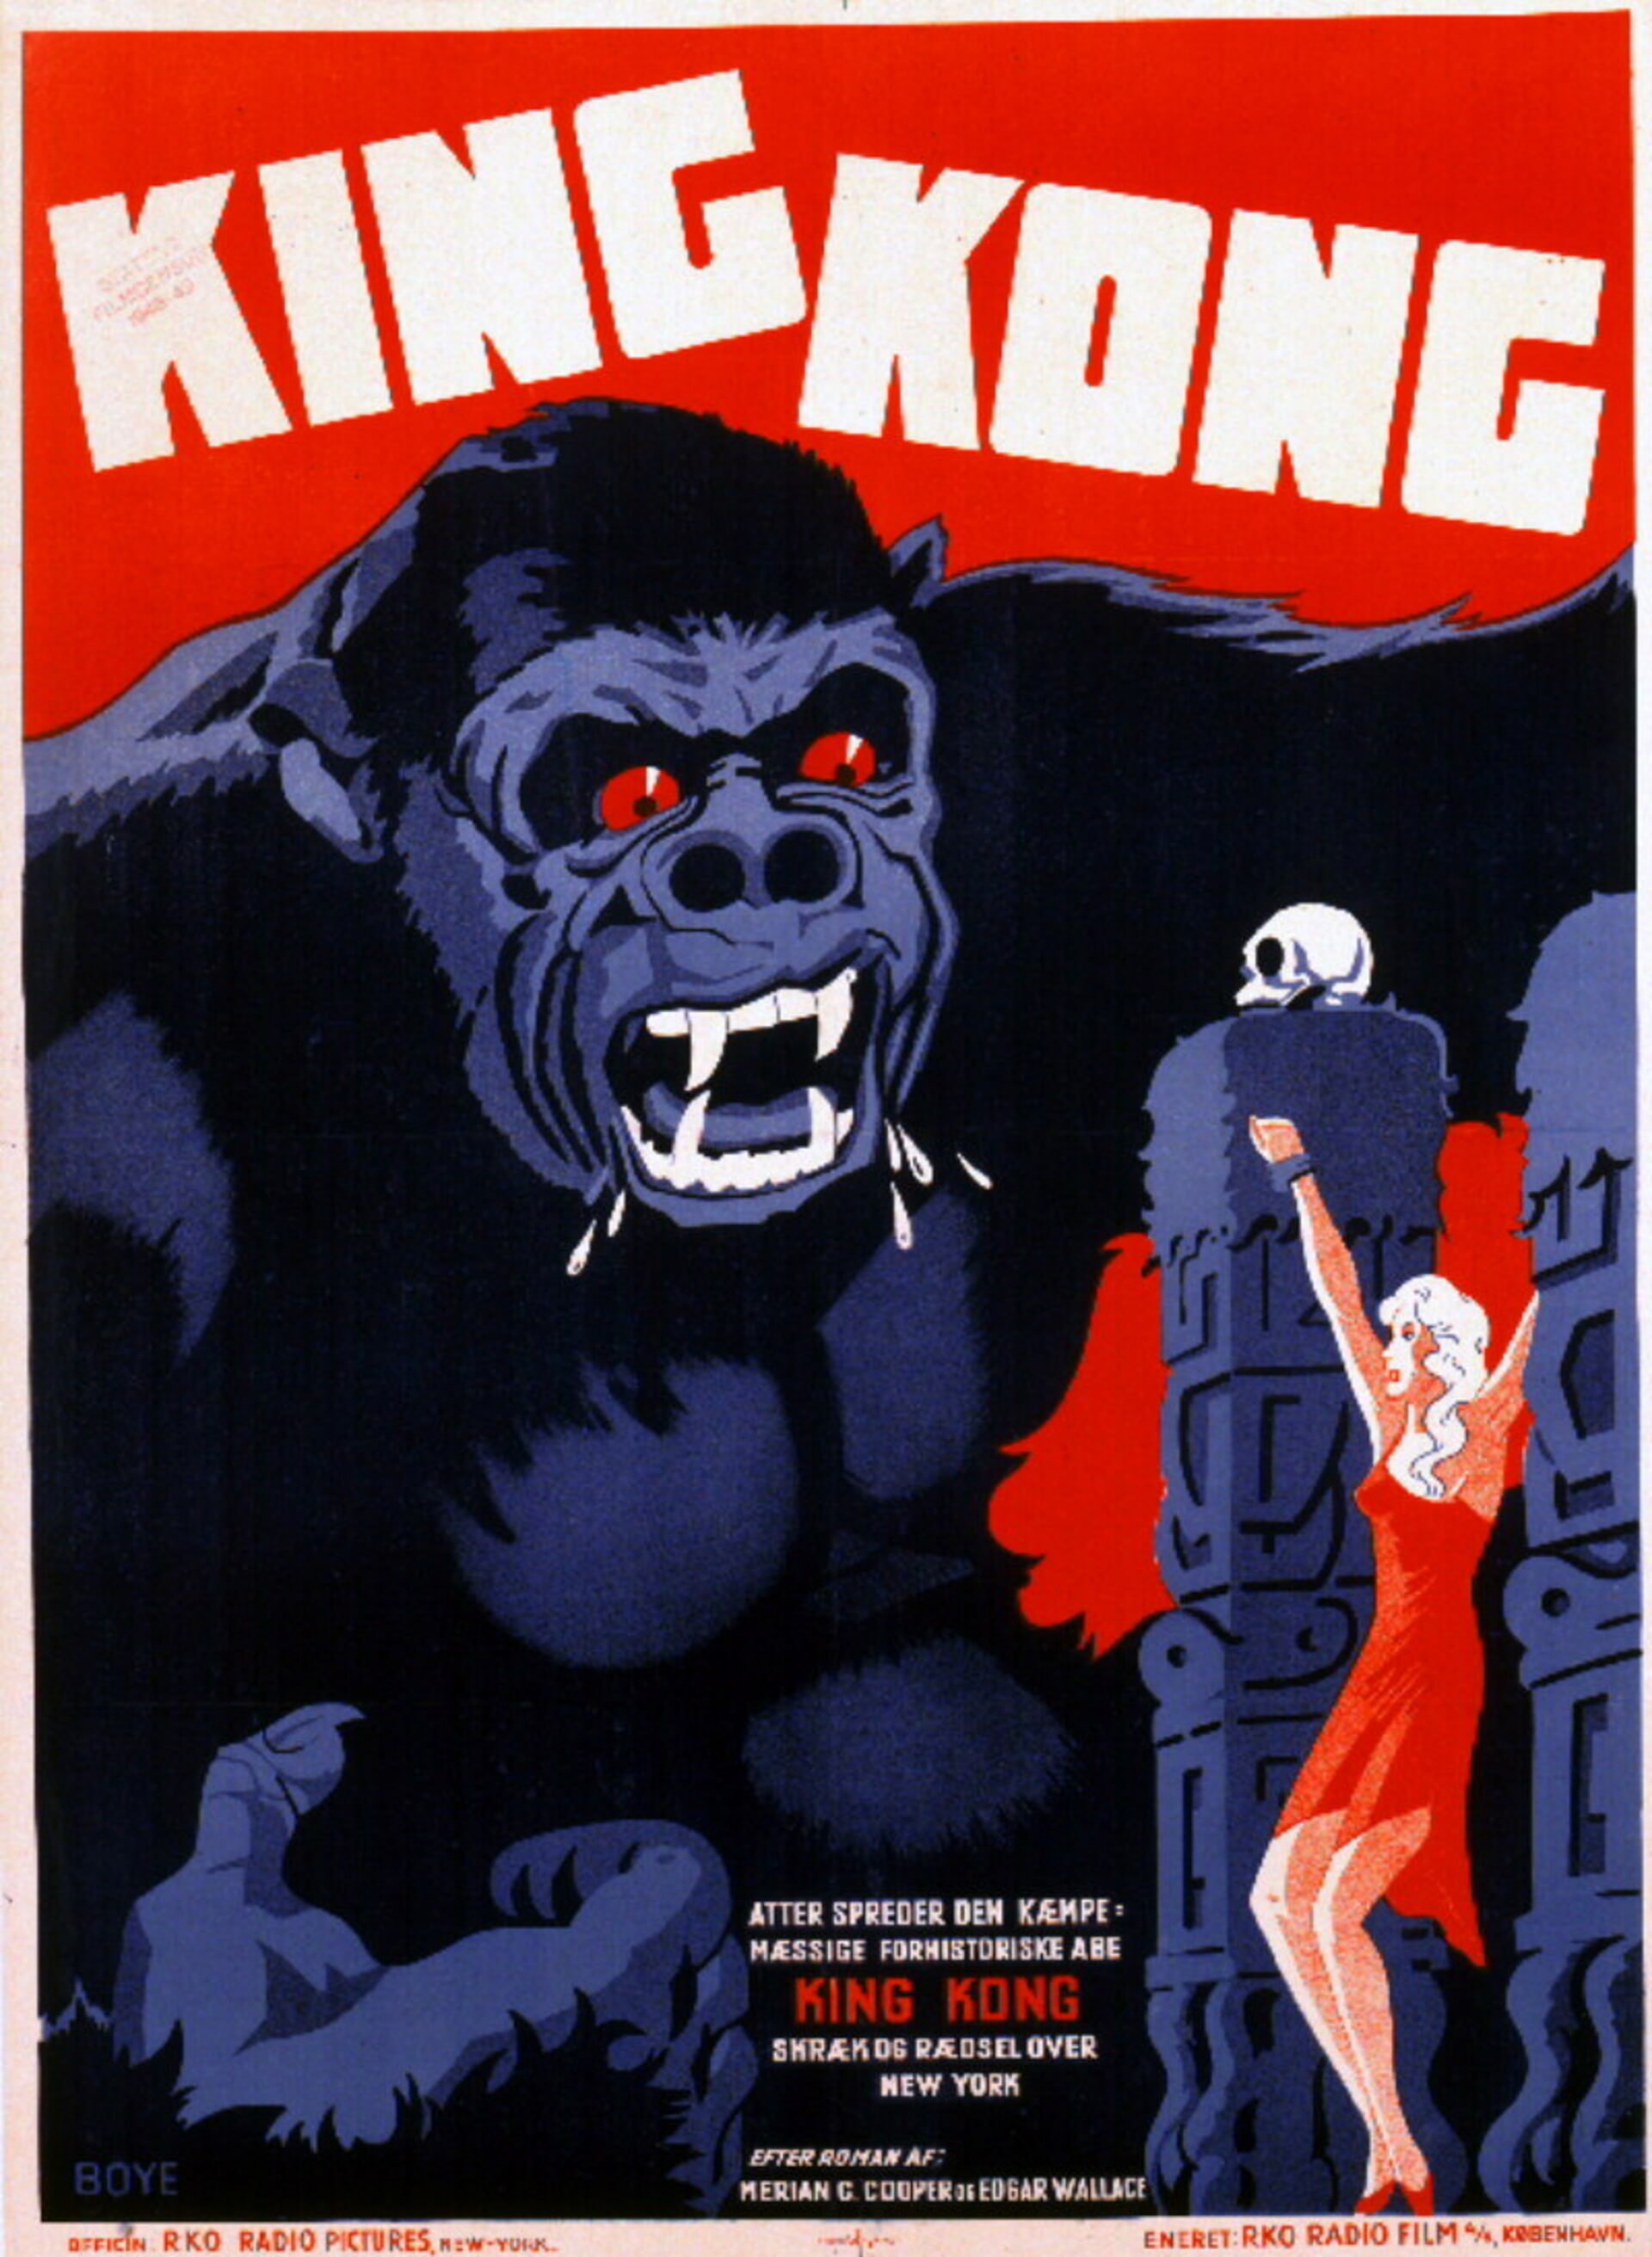 King Kong 1933 Movies